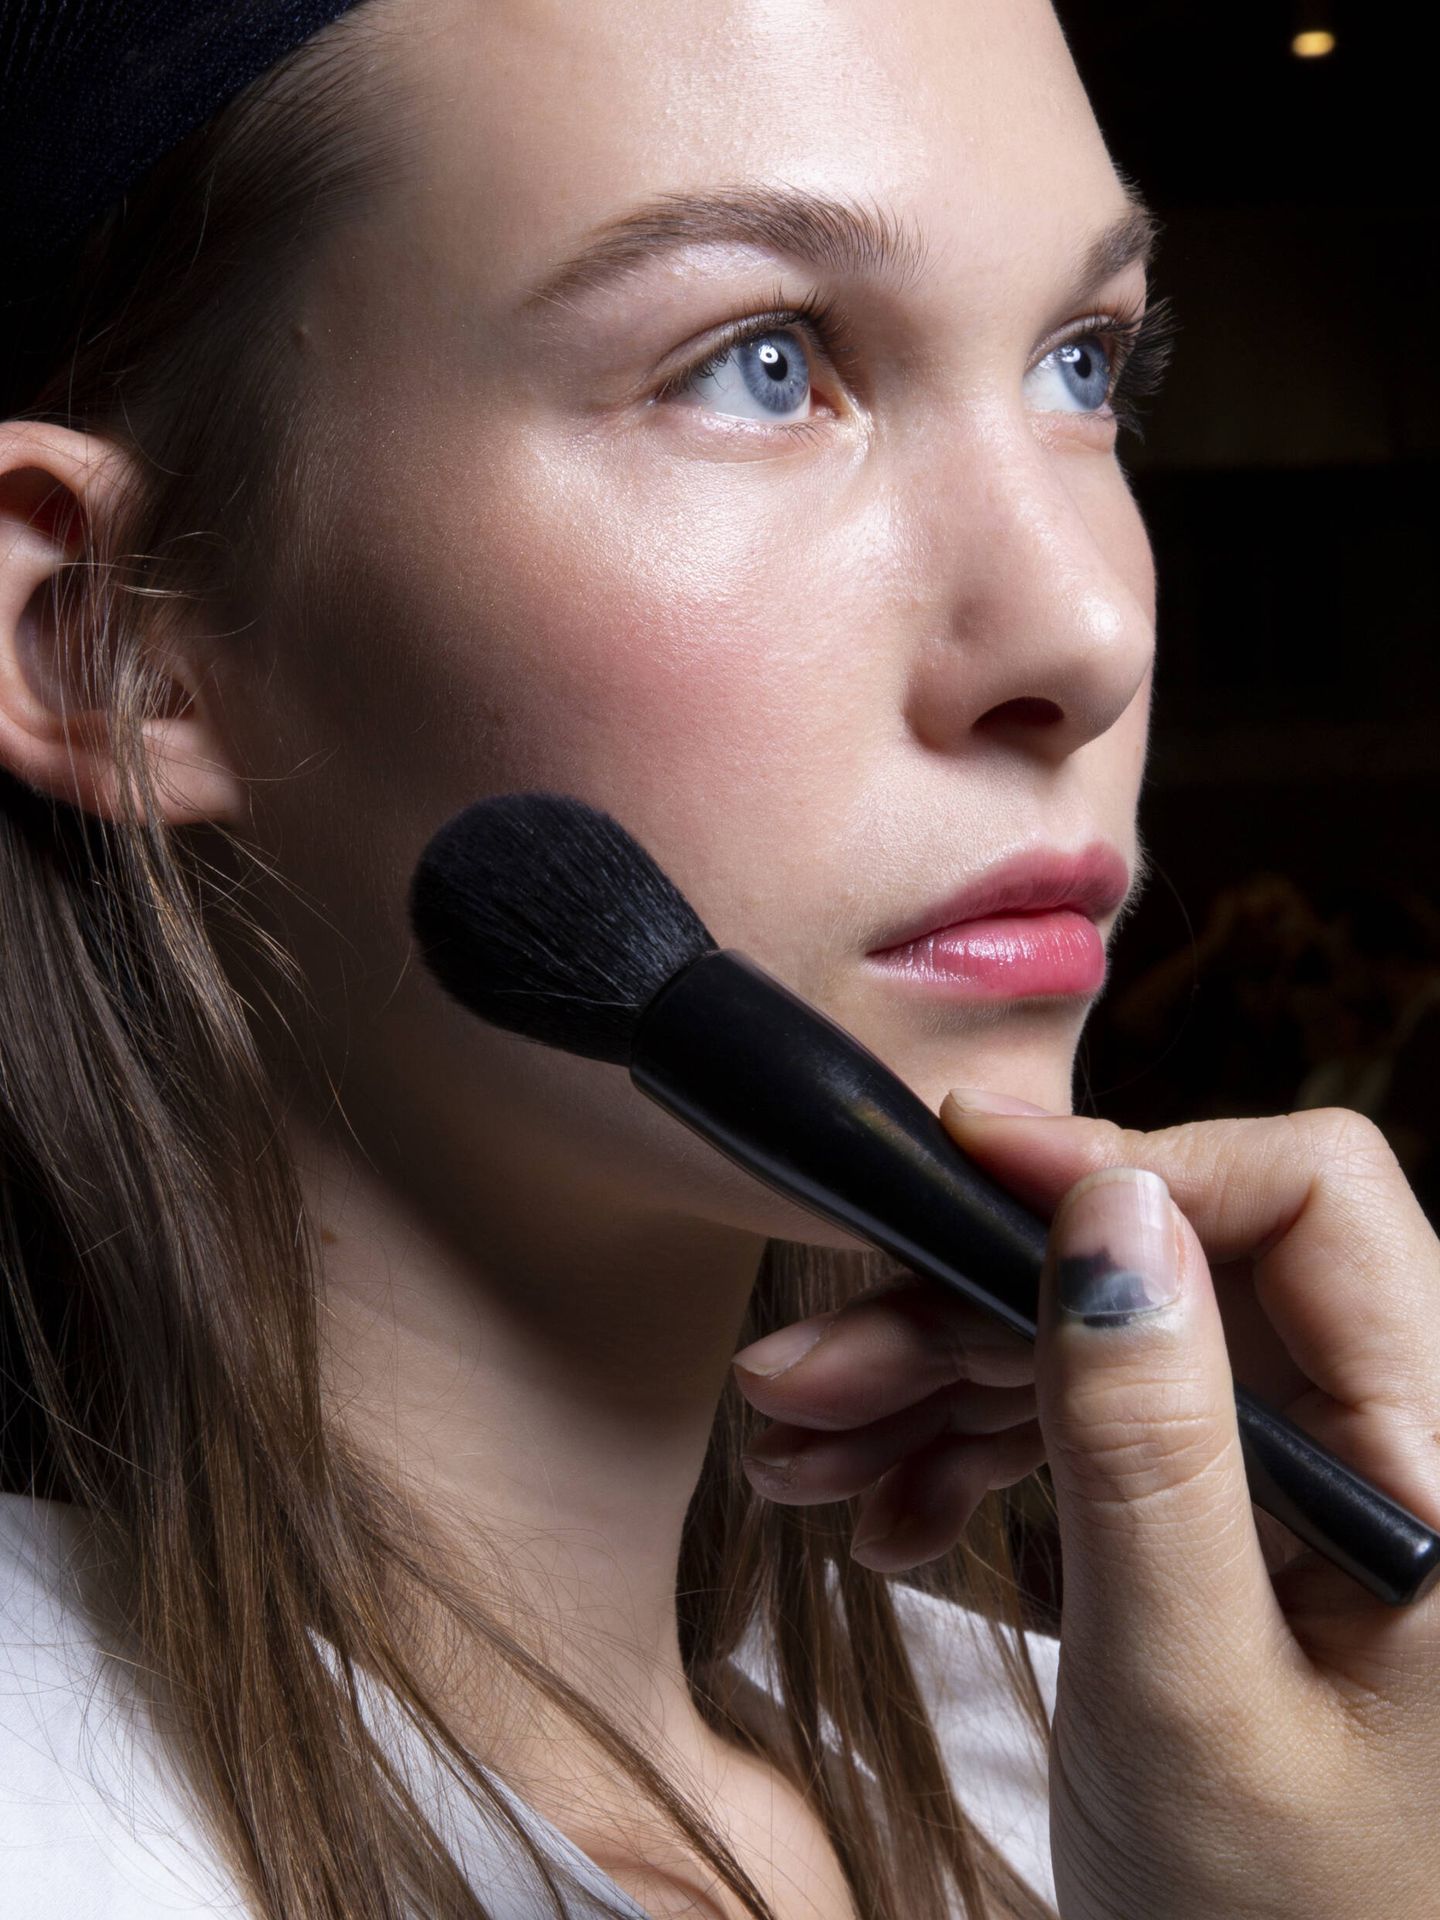 El cepillado a diario de la piel ayuda a mejorar la apariencia de los poros o devolver la luminosidad, entre otros beneficios. (Imaxtree)